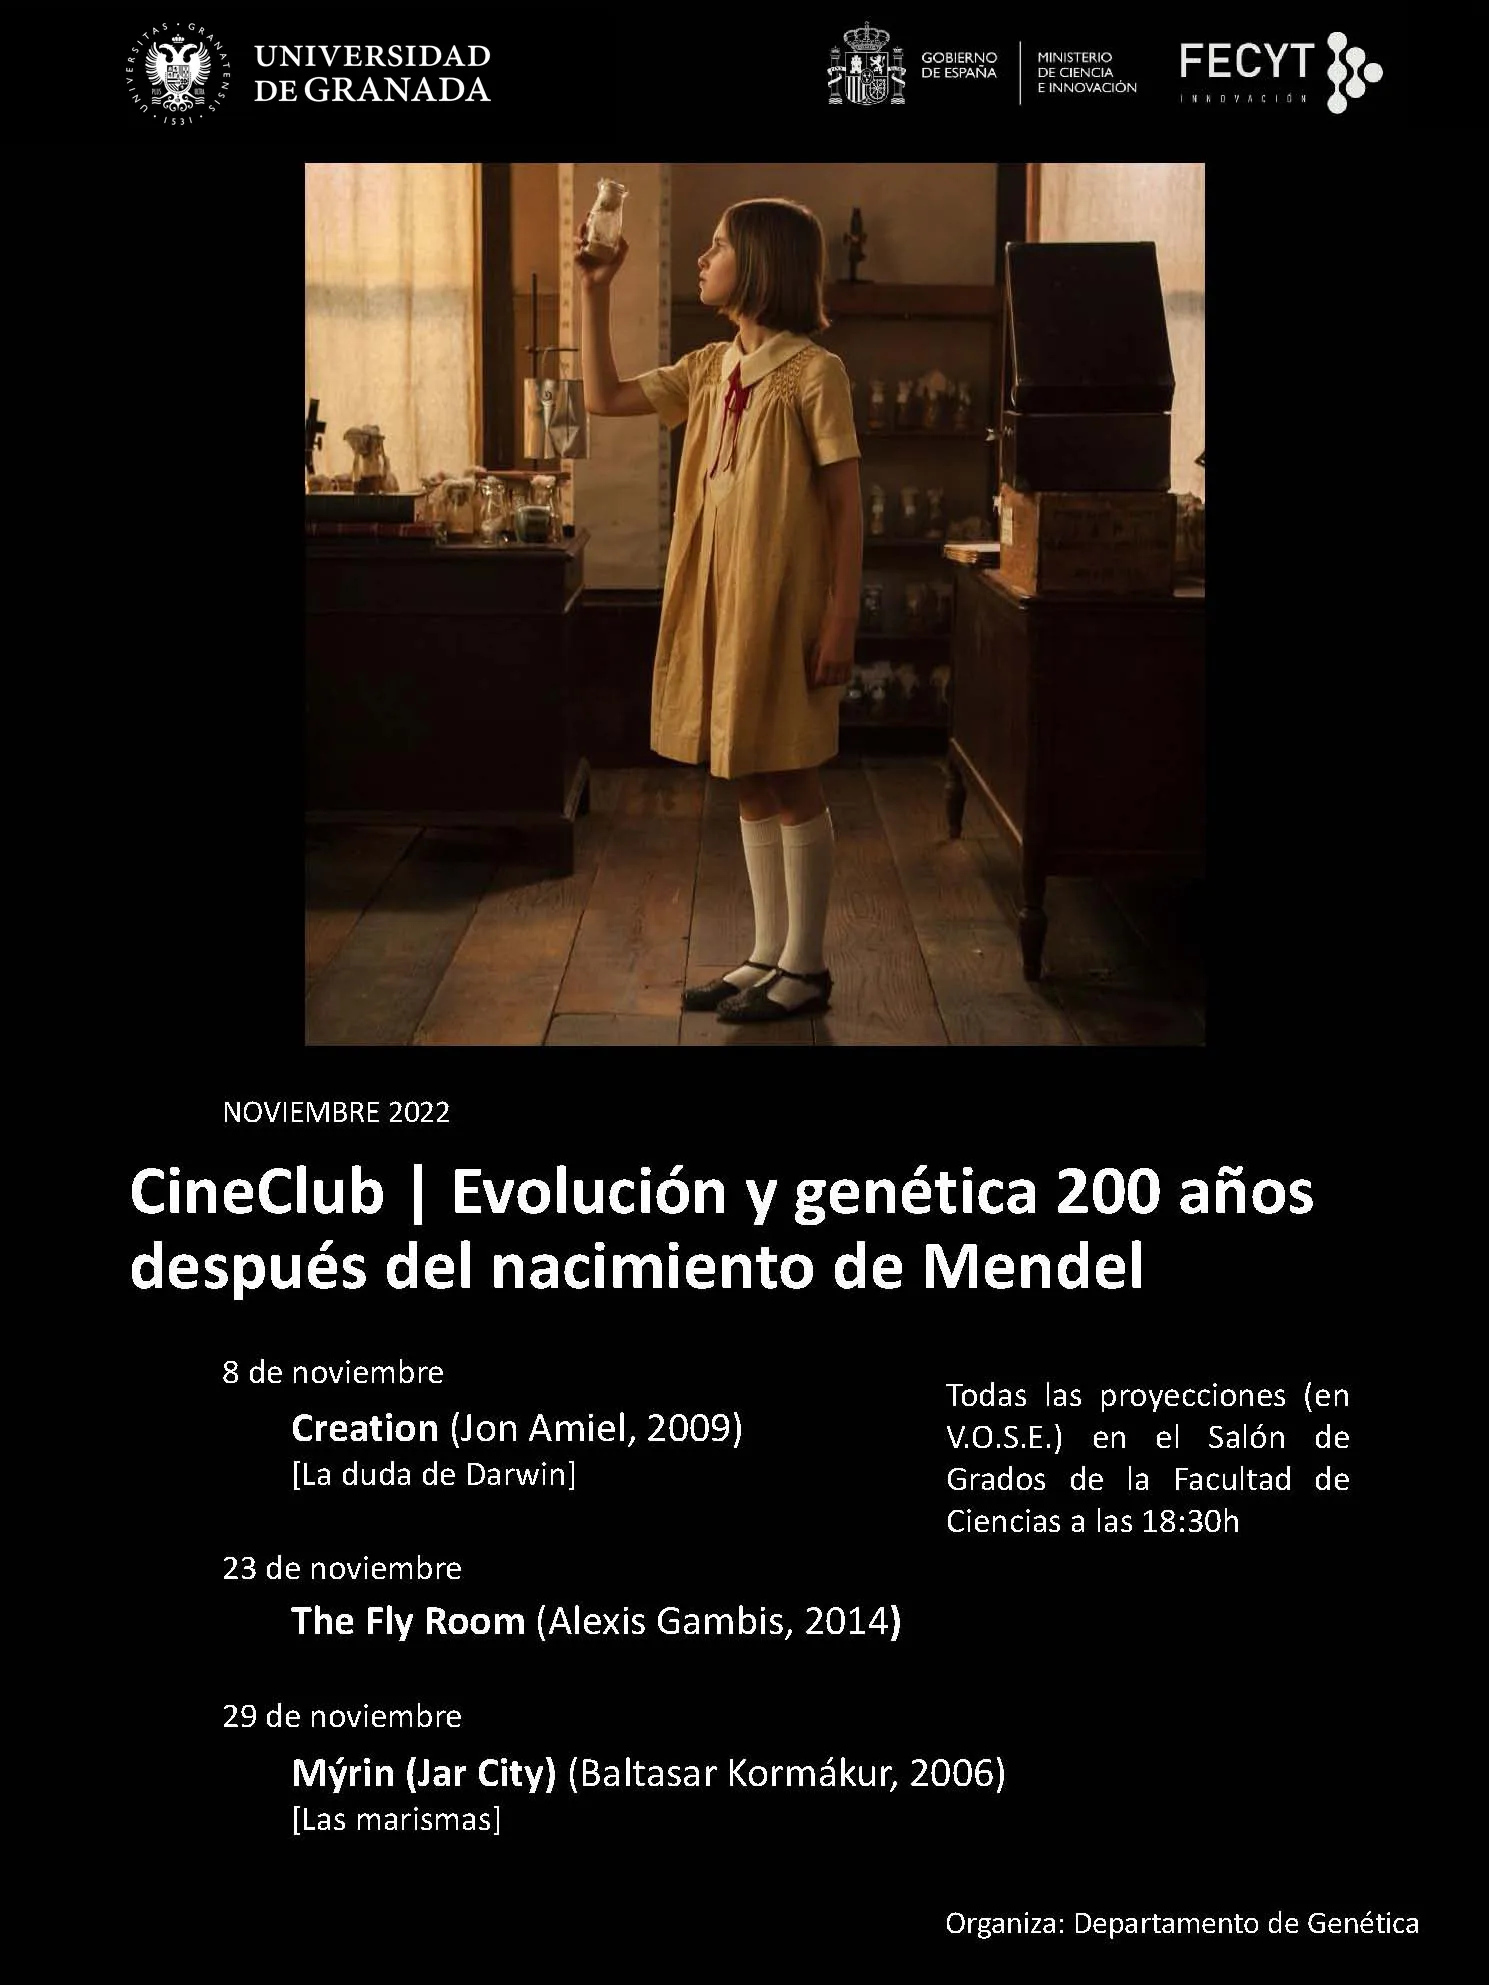 Cineclub «Evolución y genética 200 años después del nacimiento de Mendel»